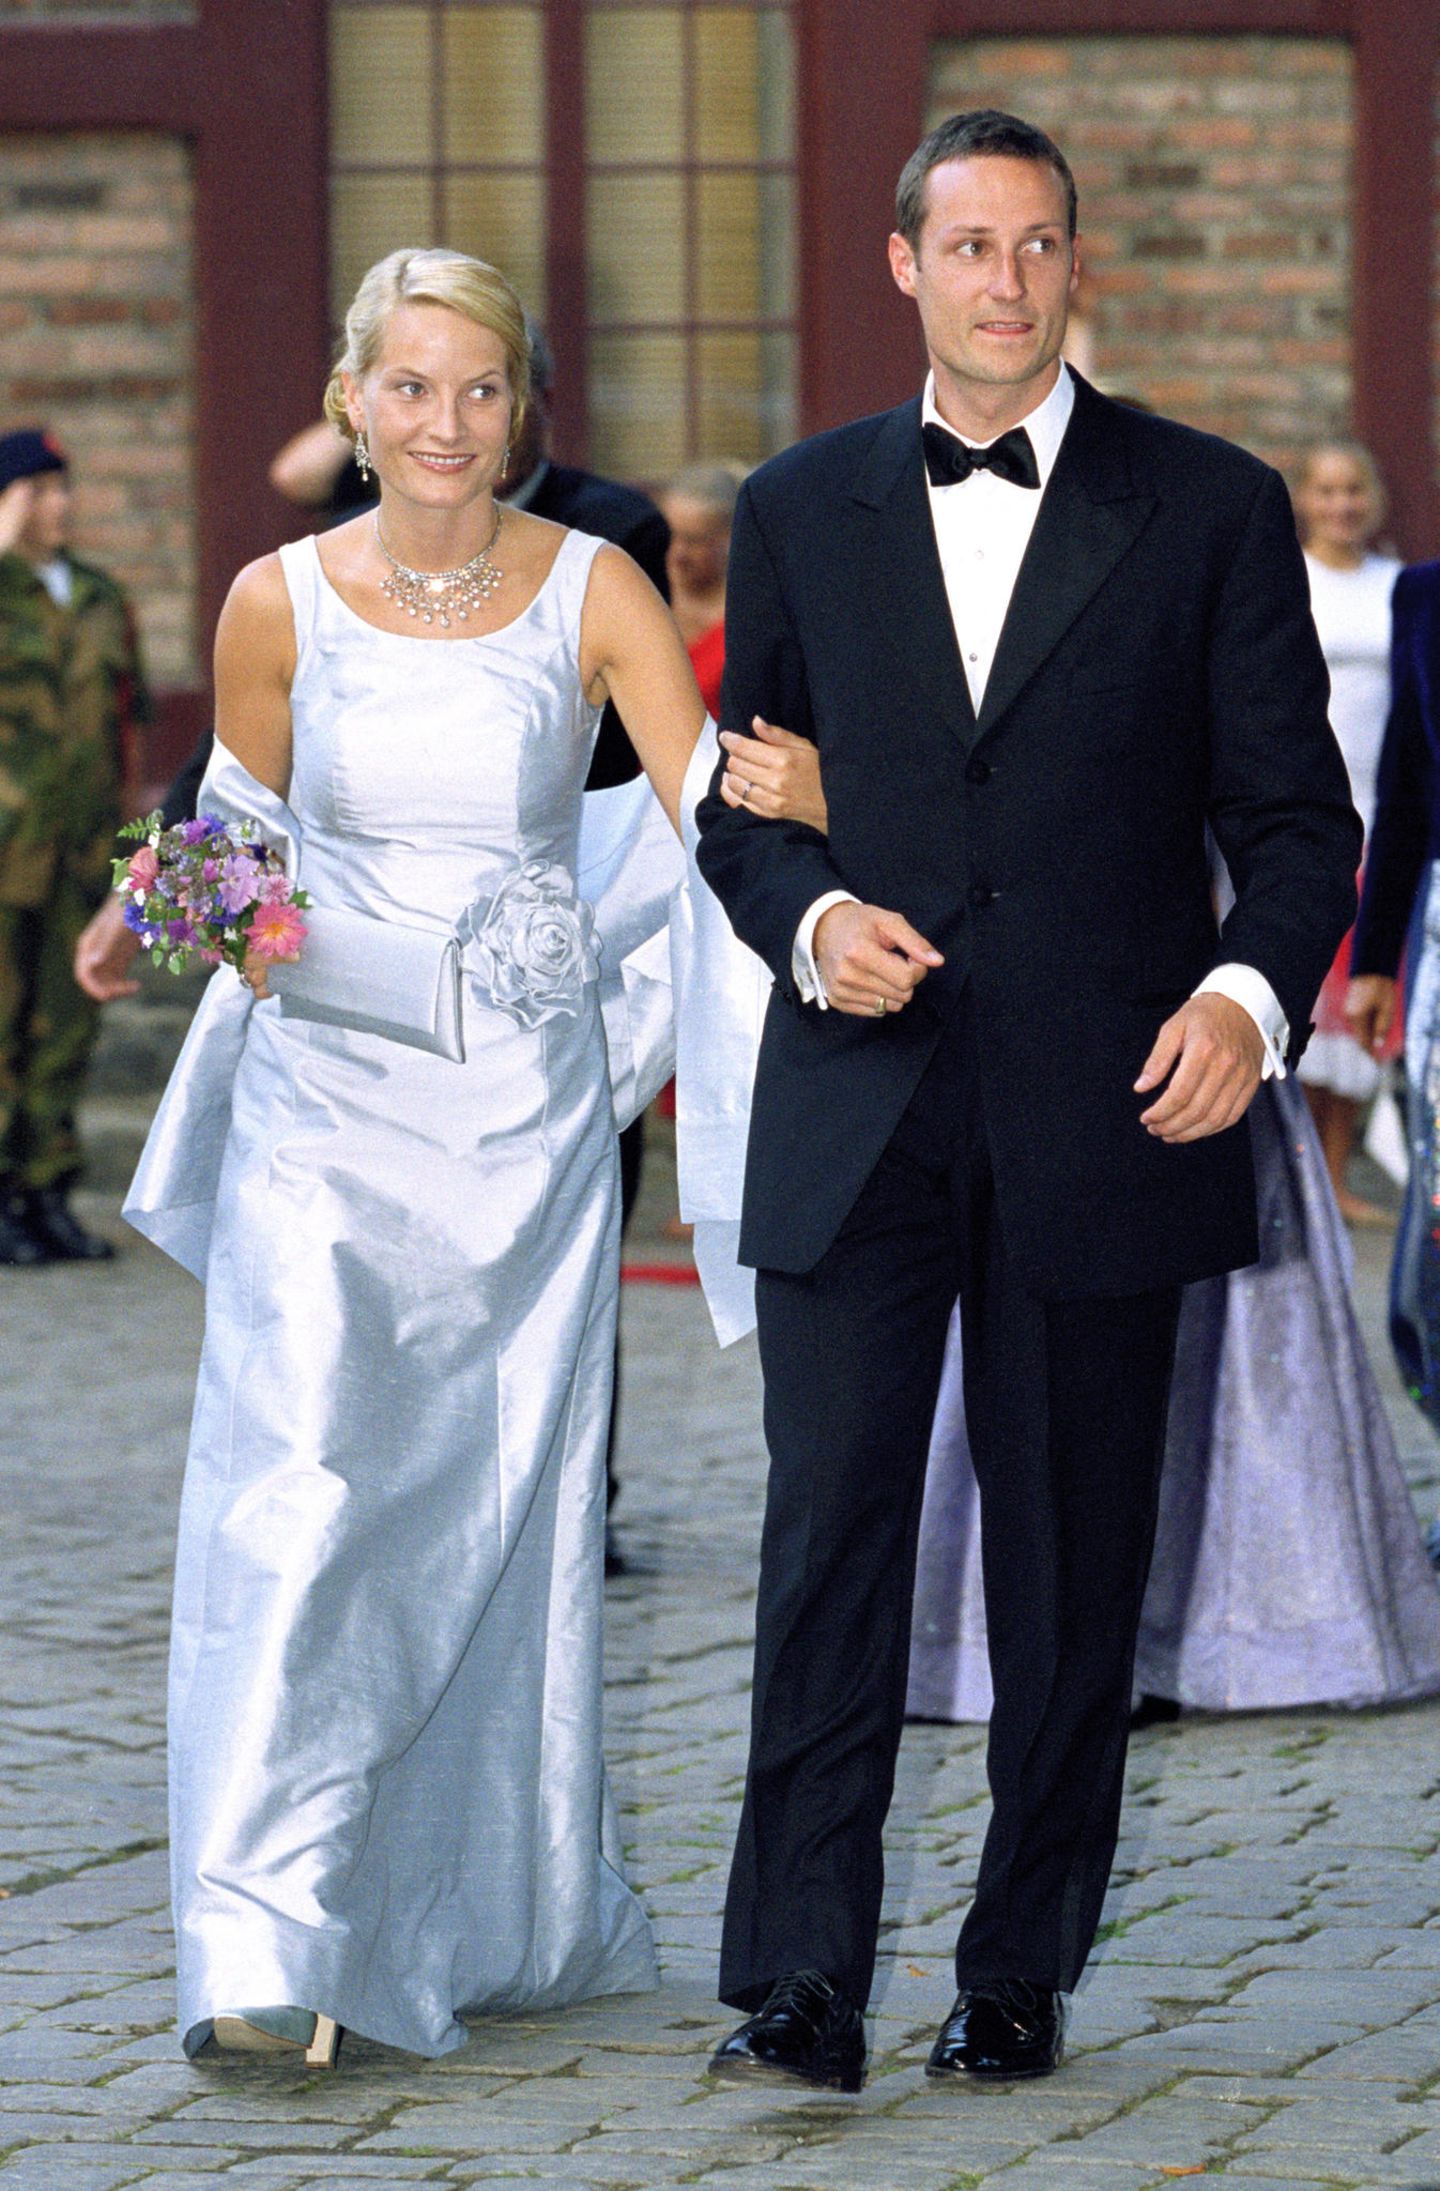 Einen Abend vor ihrer Hochzeit luden Mette-Marit und Prinz Haakon zu einem Galadinner auf Schloss Akershus ein. Die Braut in spe entschied sich für einen Brautkleid-inspirierten Look bestehend aus einem zartblauen Satindress mit farbig passendem Bolero und Blumenapplikation. Die Clutch in selbigem Blauton fügte sich harmonisch ins Bild. 